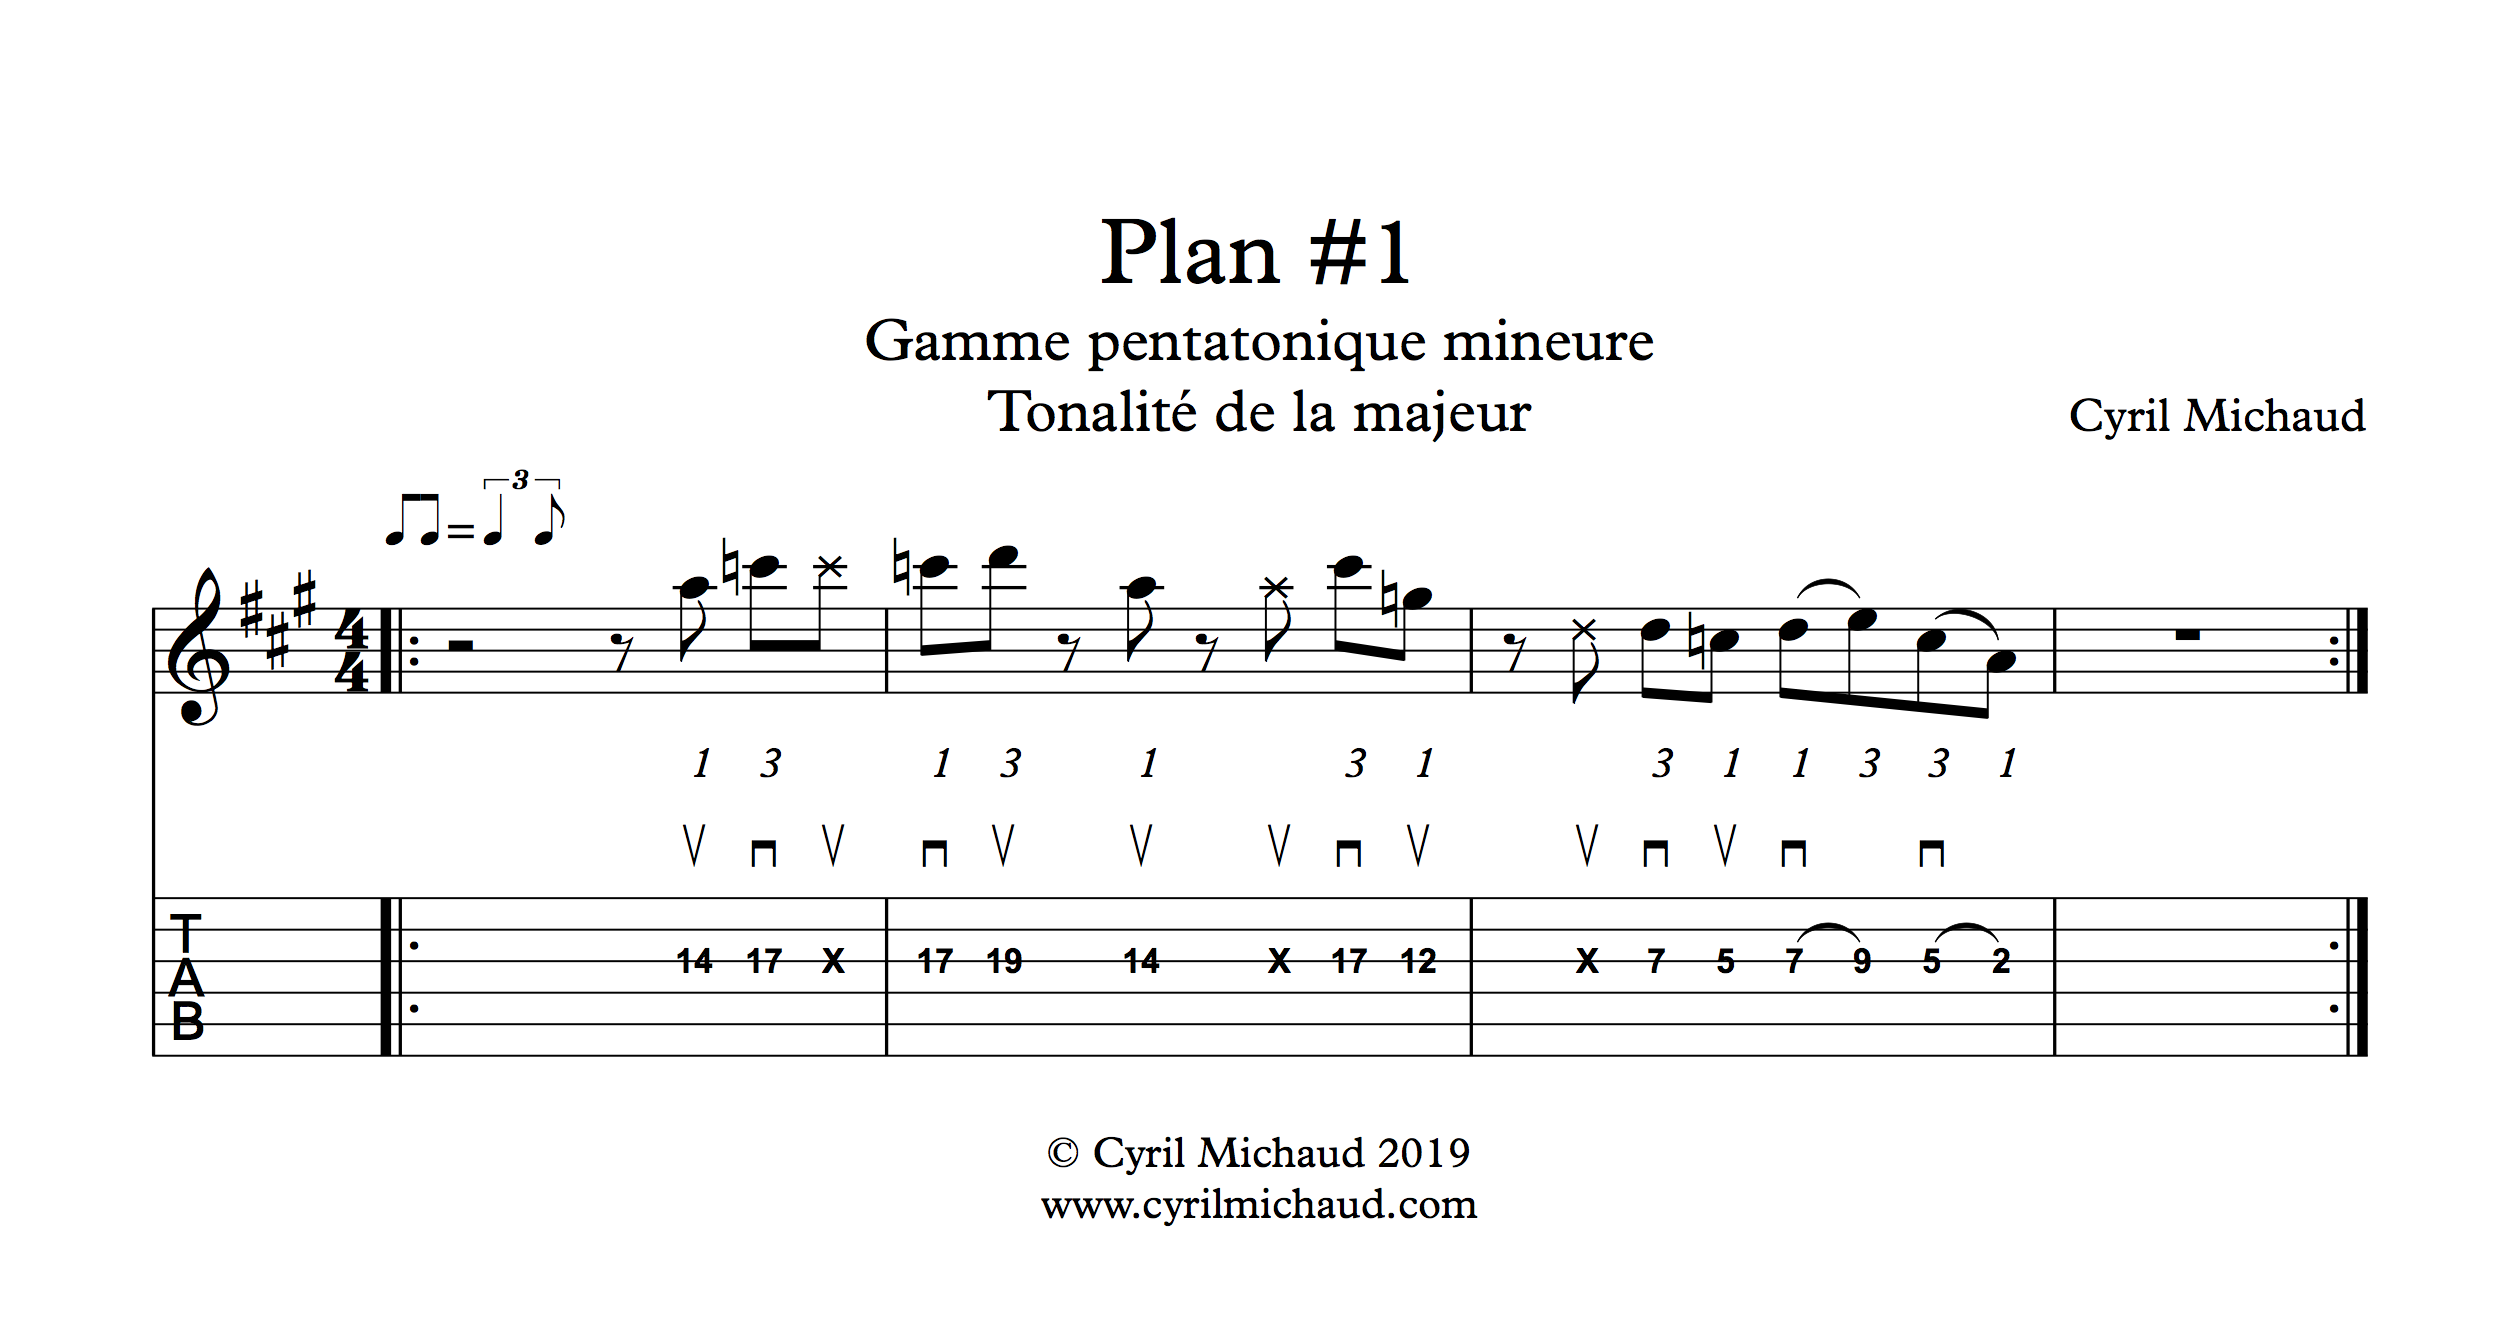 Plan blues sur la gamme pentatonique mineure (1)